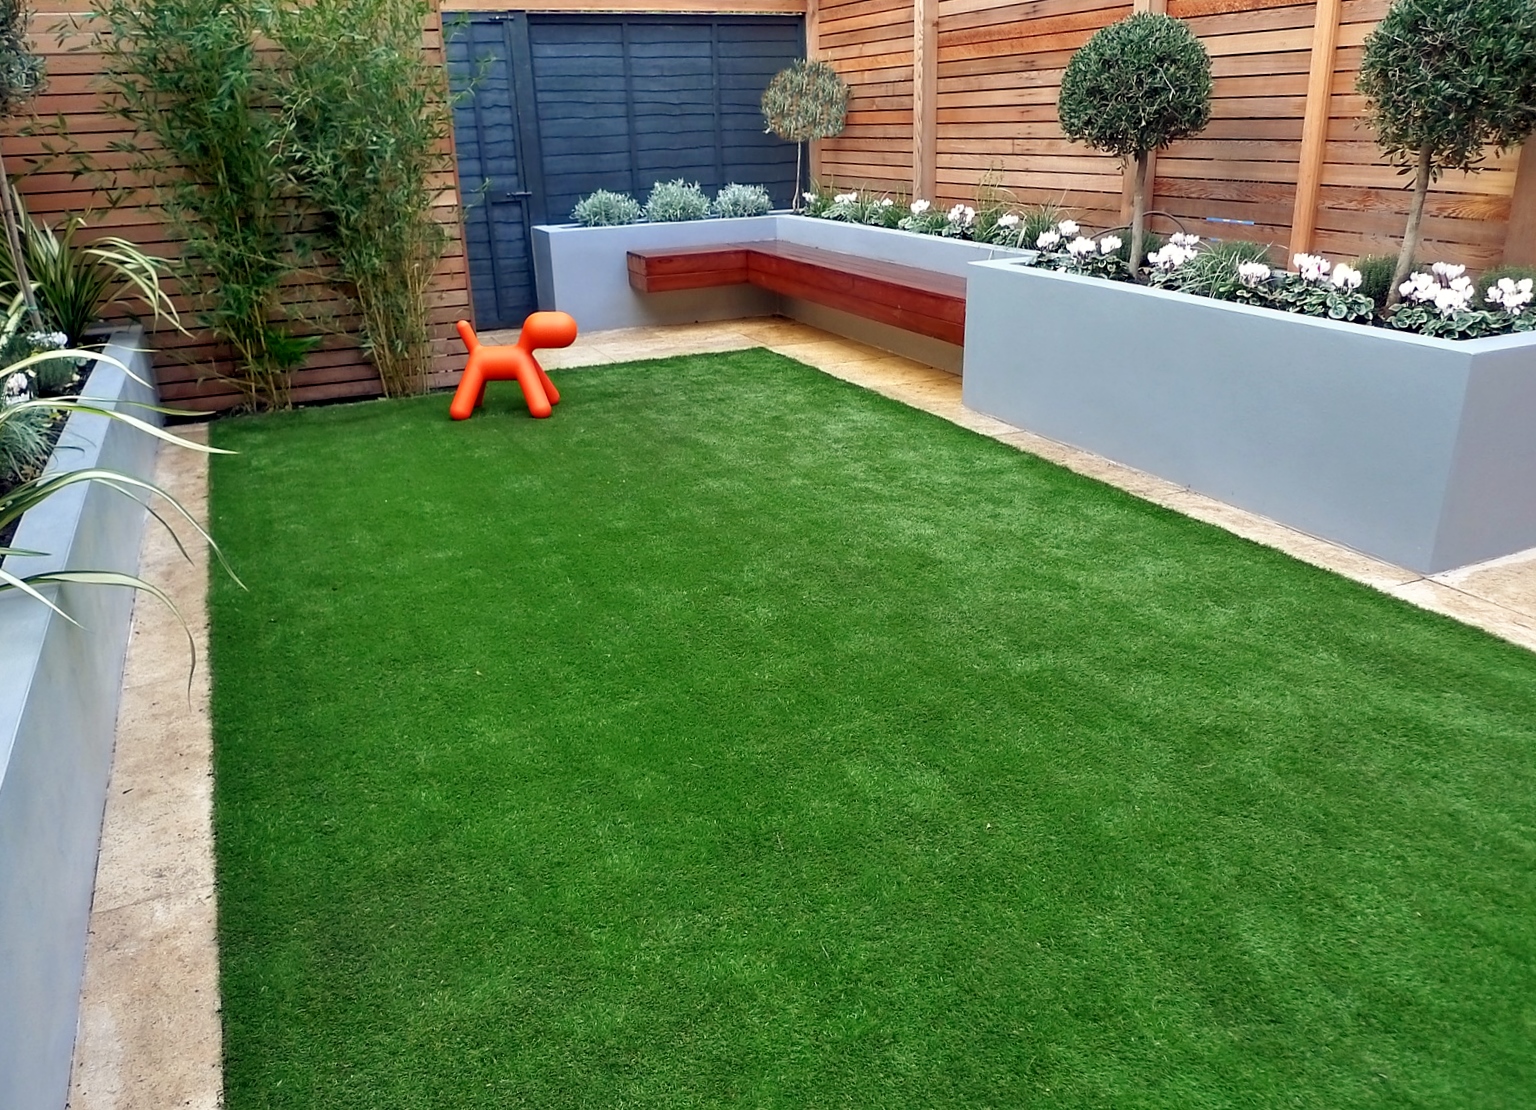 1609656753_modern-garden-design-artificial-grass-raised-beds-cedar-screen-floating-bench-london-designer-battersea-balham-clapham.jpg